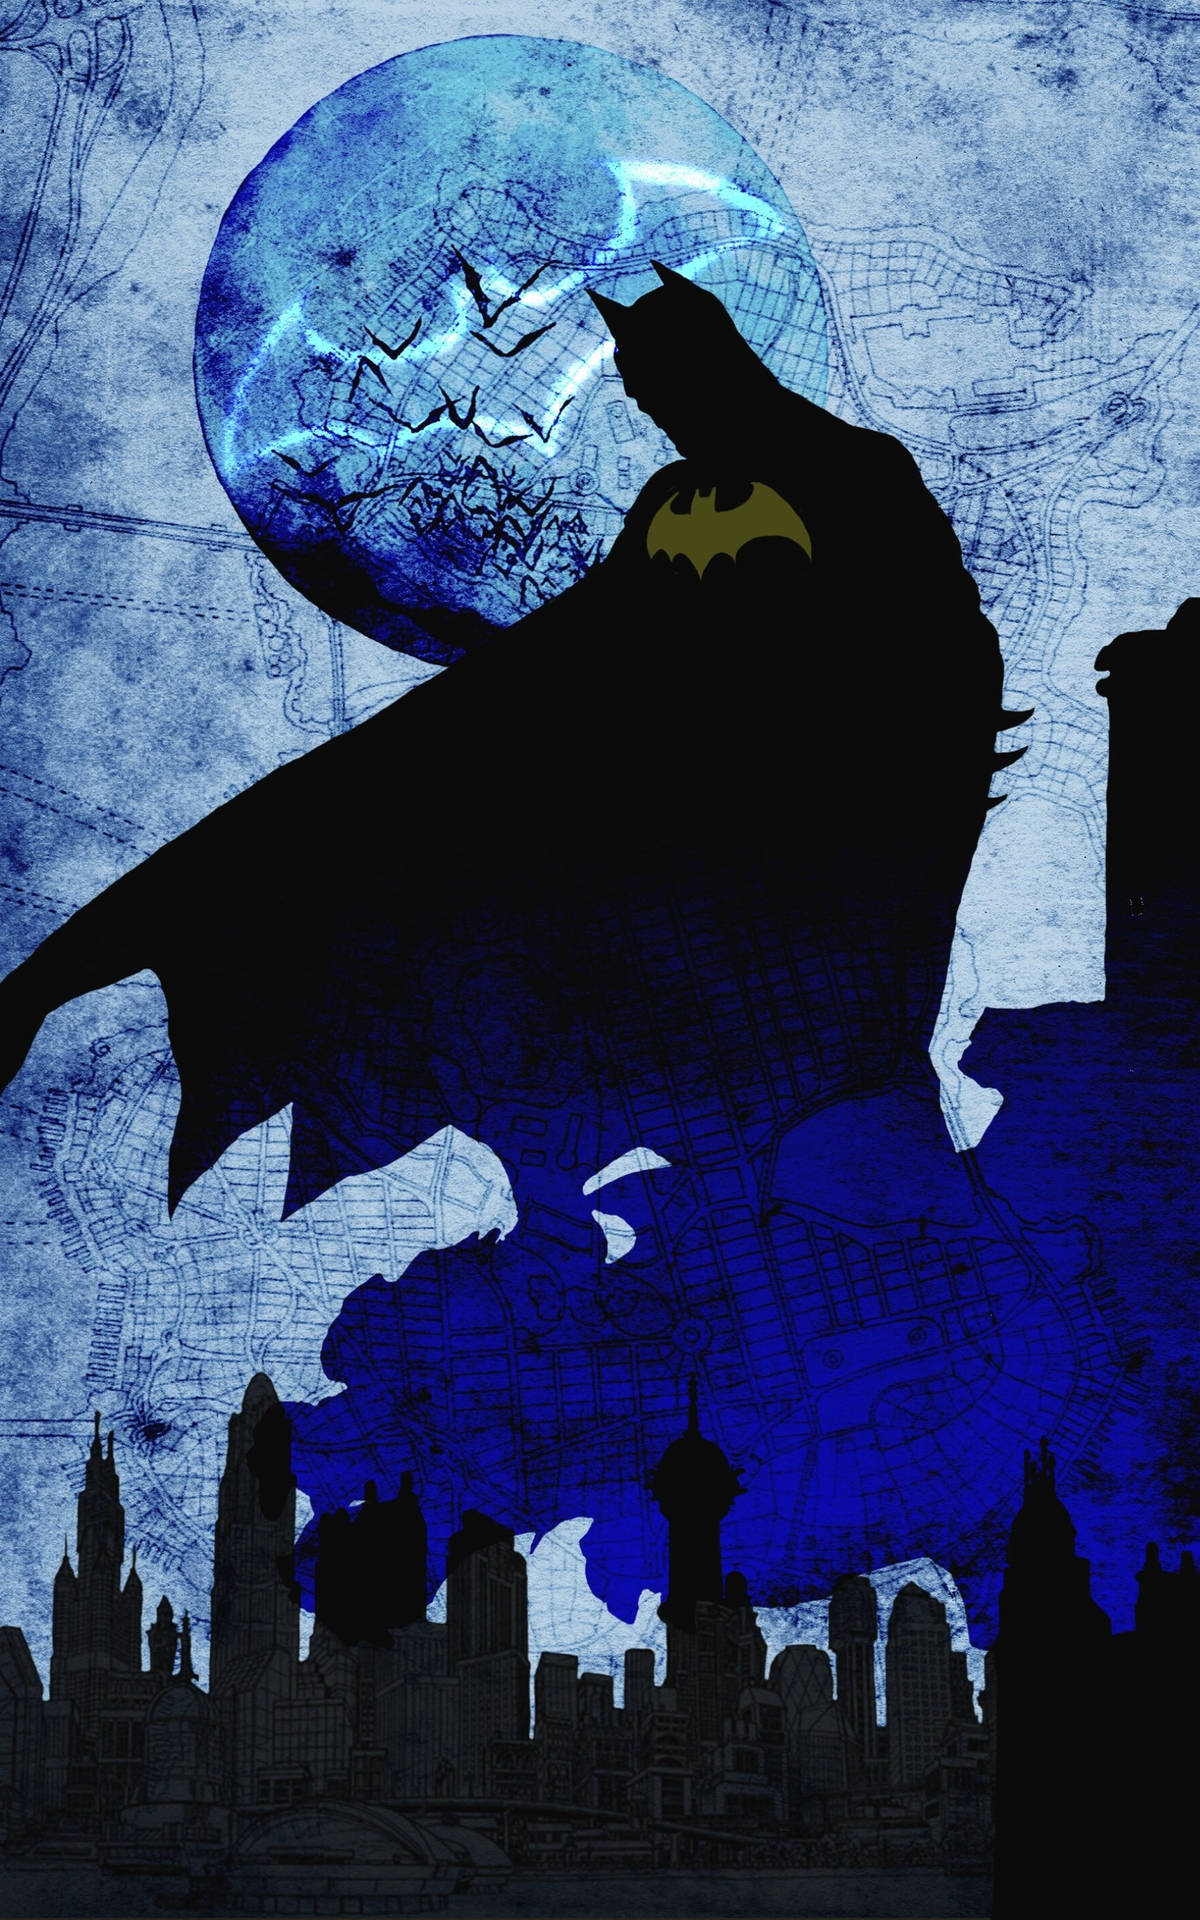 The Batman Phone Wallpaper - EnJpg